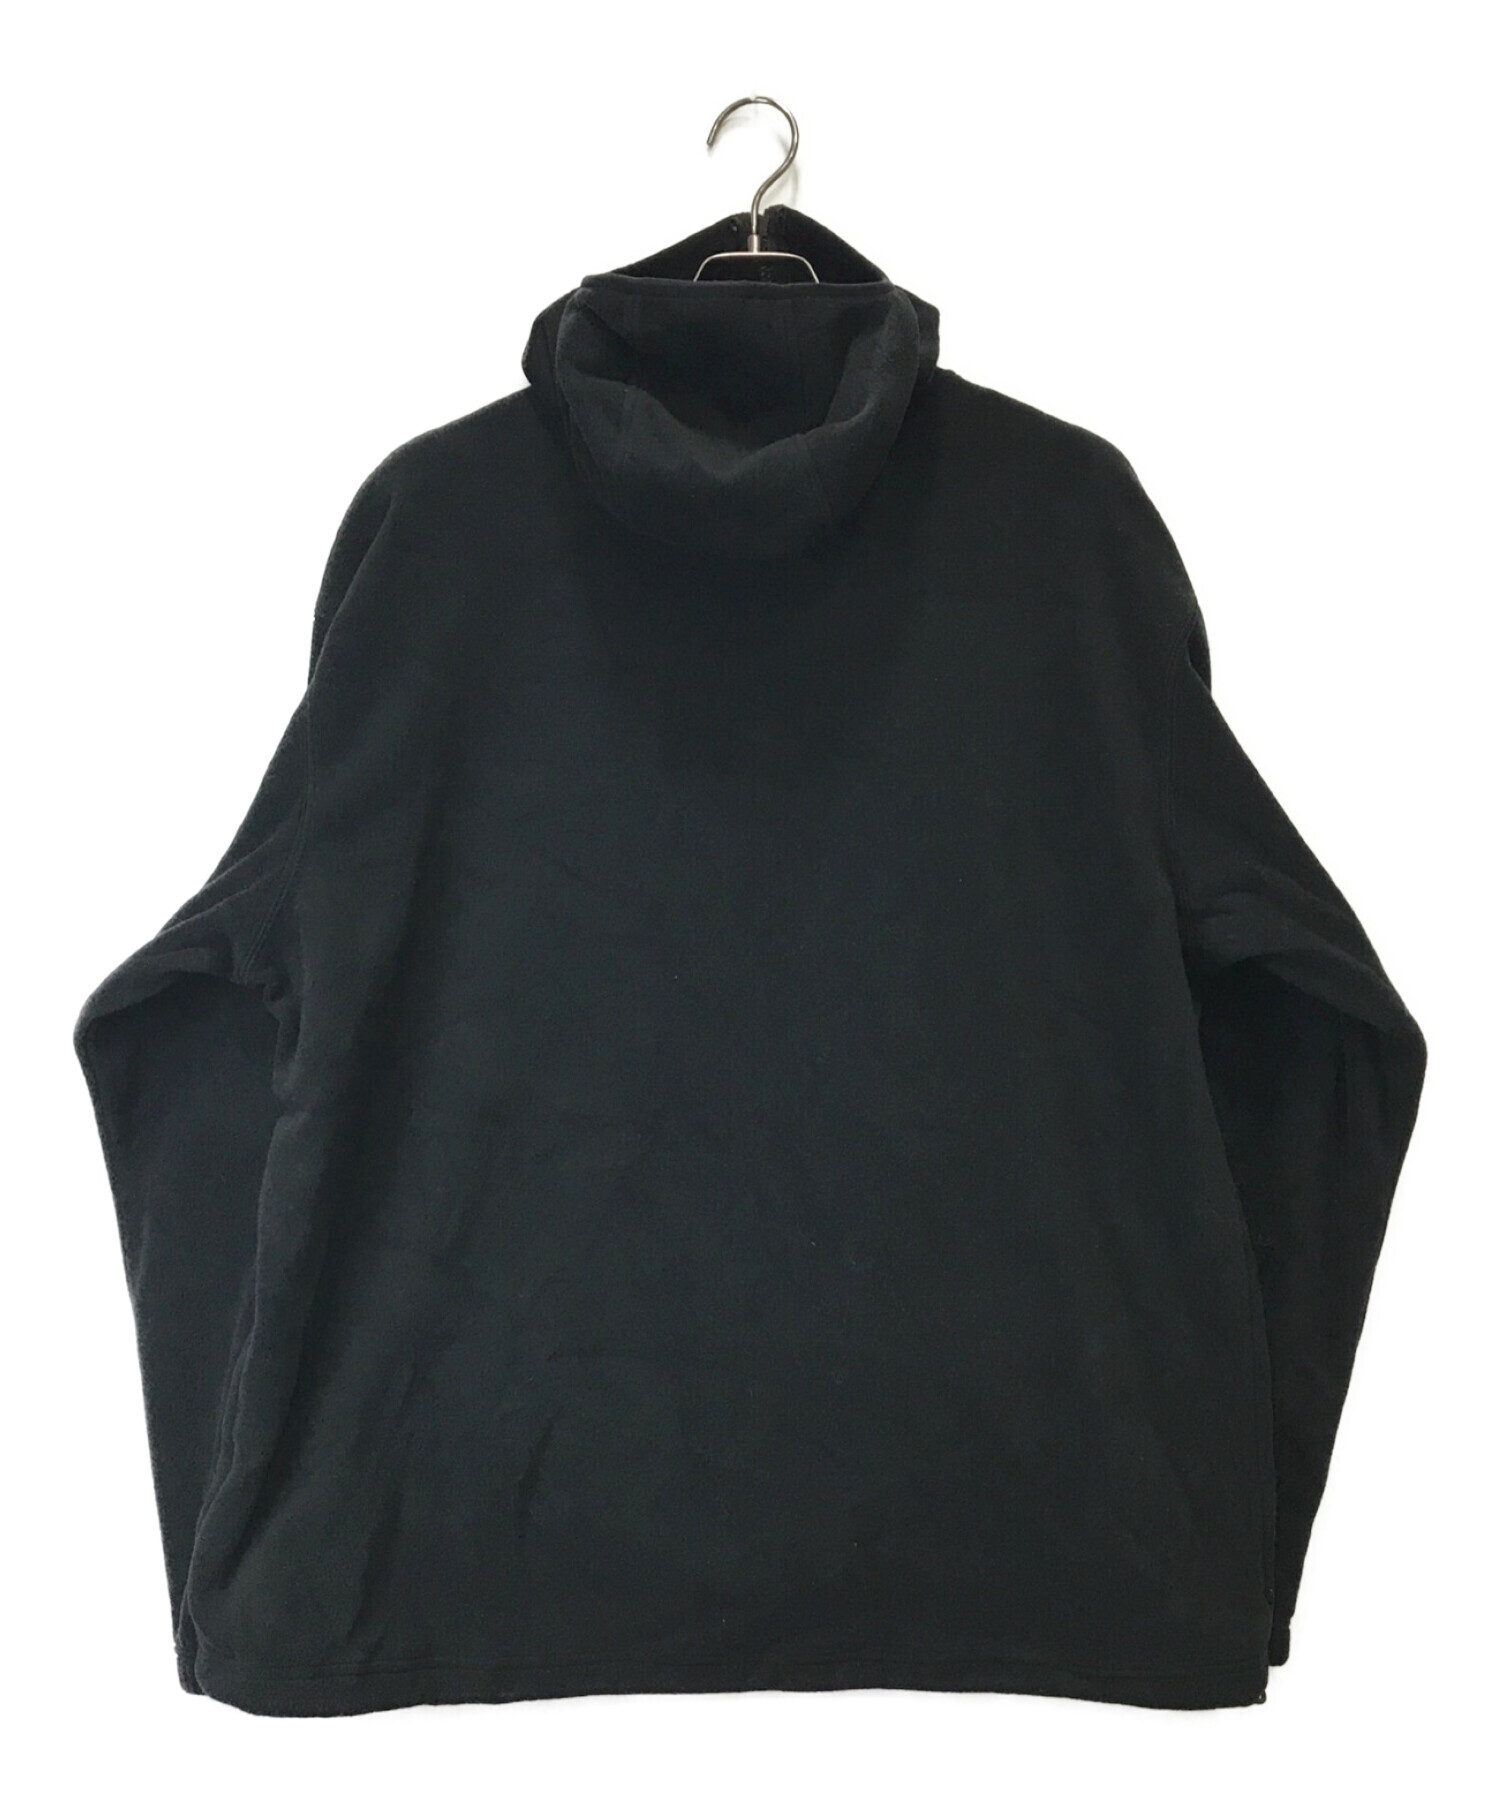 supremeSupreme Polartec Half Zip Pullover XL 黒